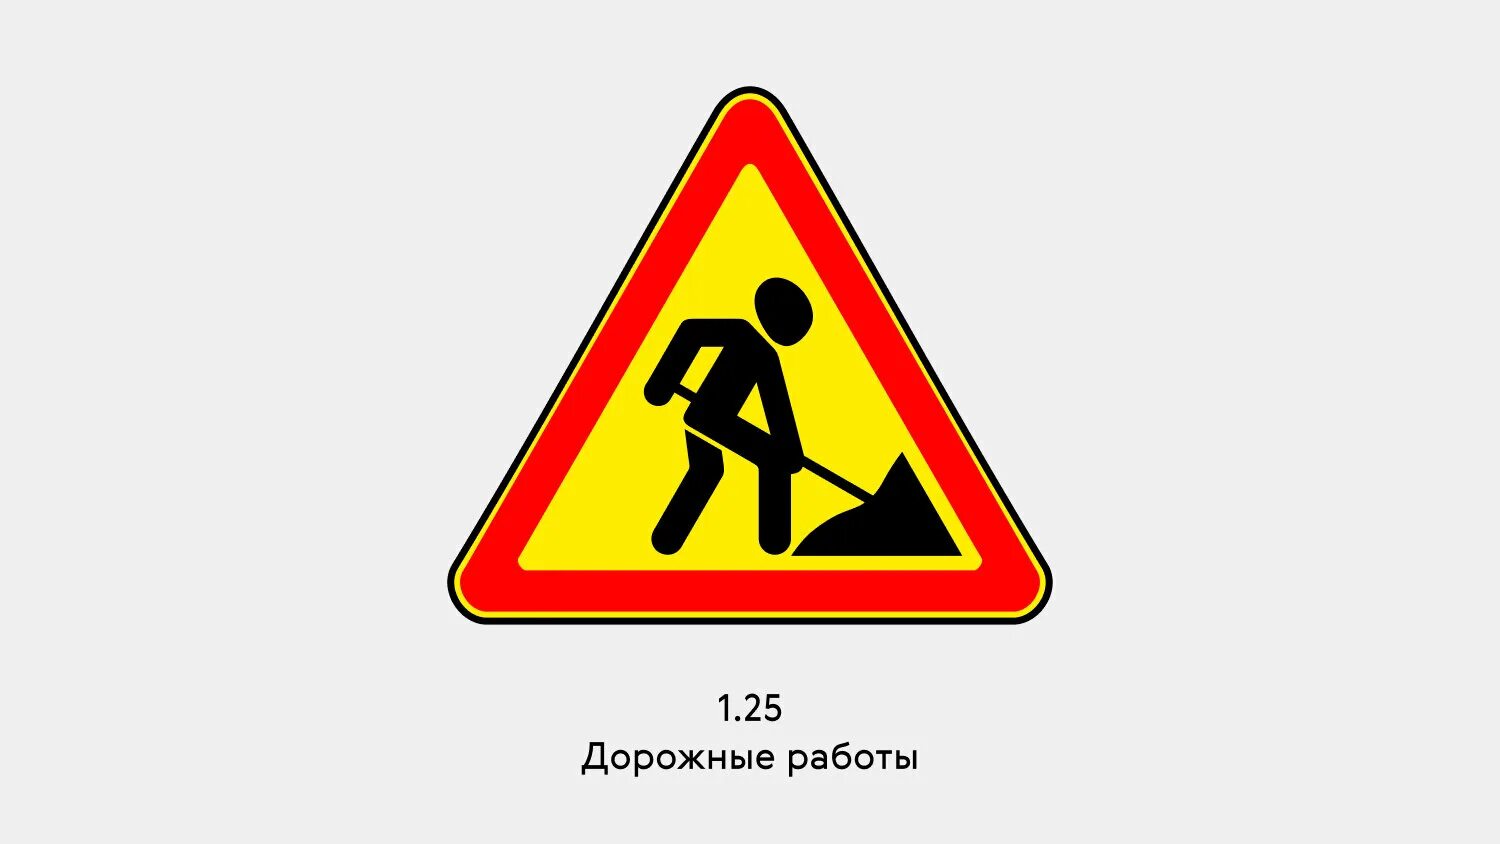 Знак 1.2 5. Знак дорожный 1.25. "Дорожные работы" (Тип а, 2 типоразмер). Дорожный знак 1.25. Дорожный знак 1.25 на желтом фоне. Знак 1.25 временный.